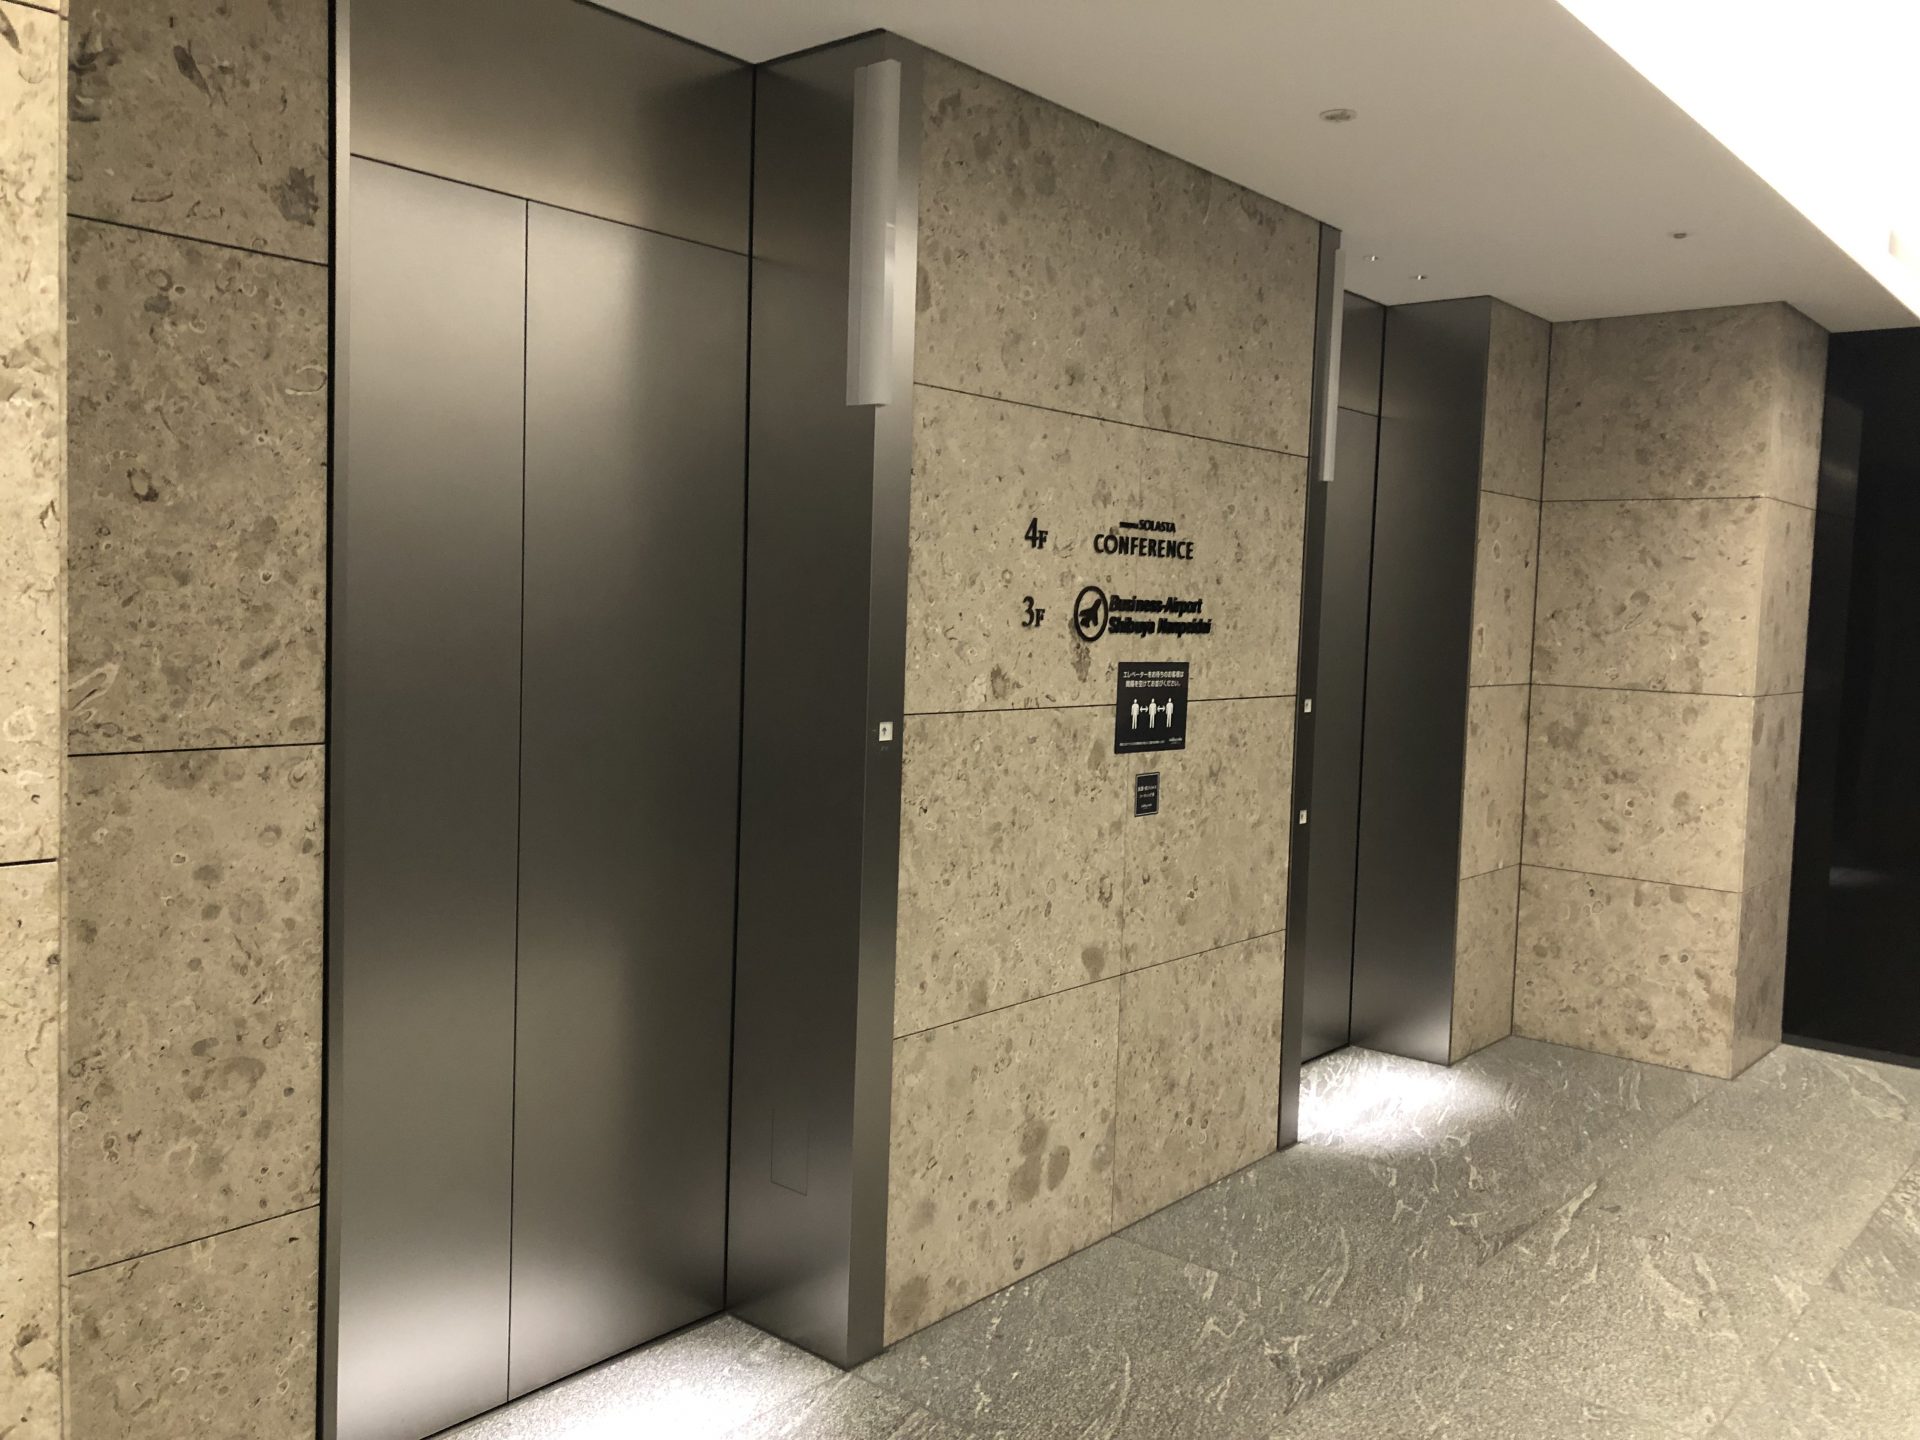 ビジネスエアポート渋谷南平台 エレベーターで3Fへ上がるとすぐ受付